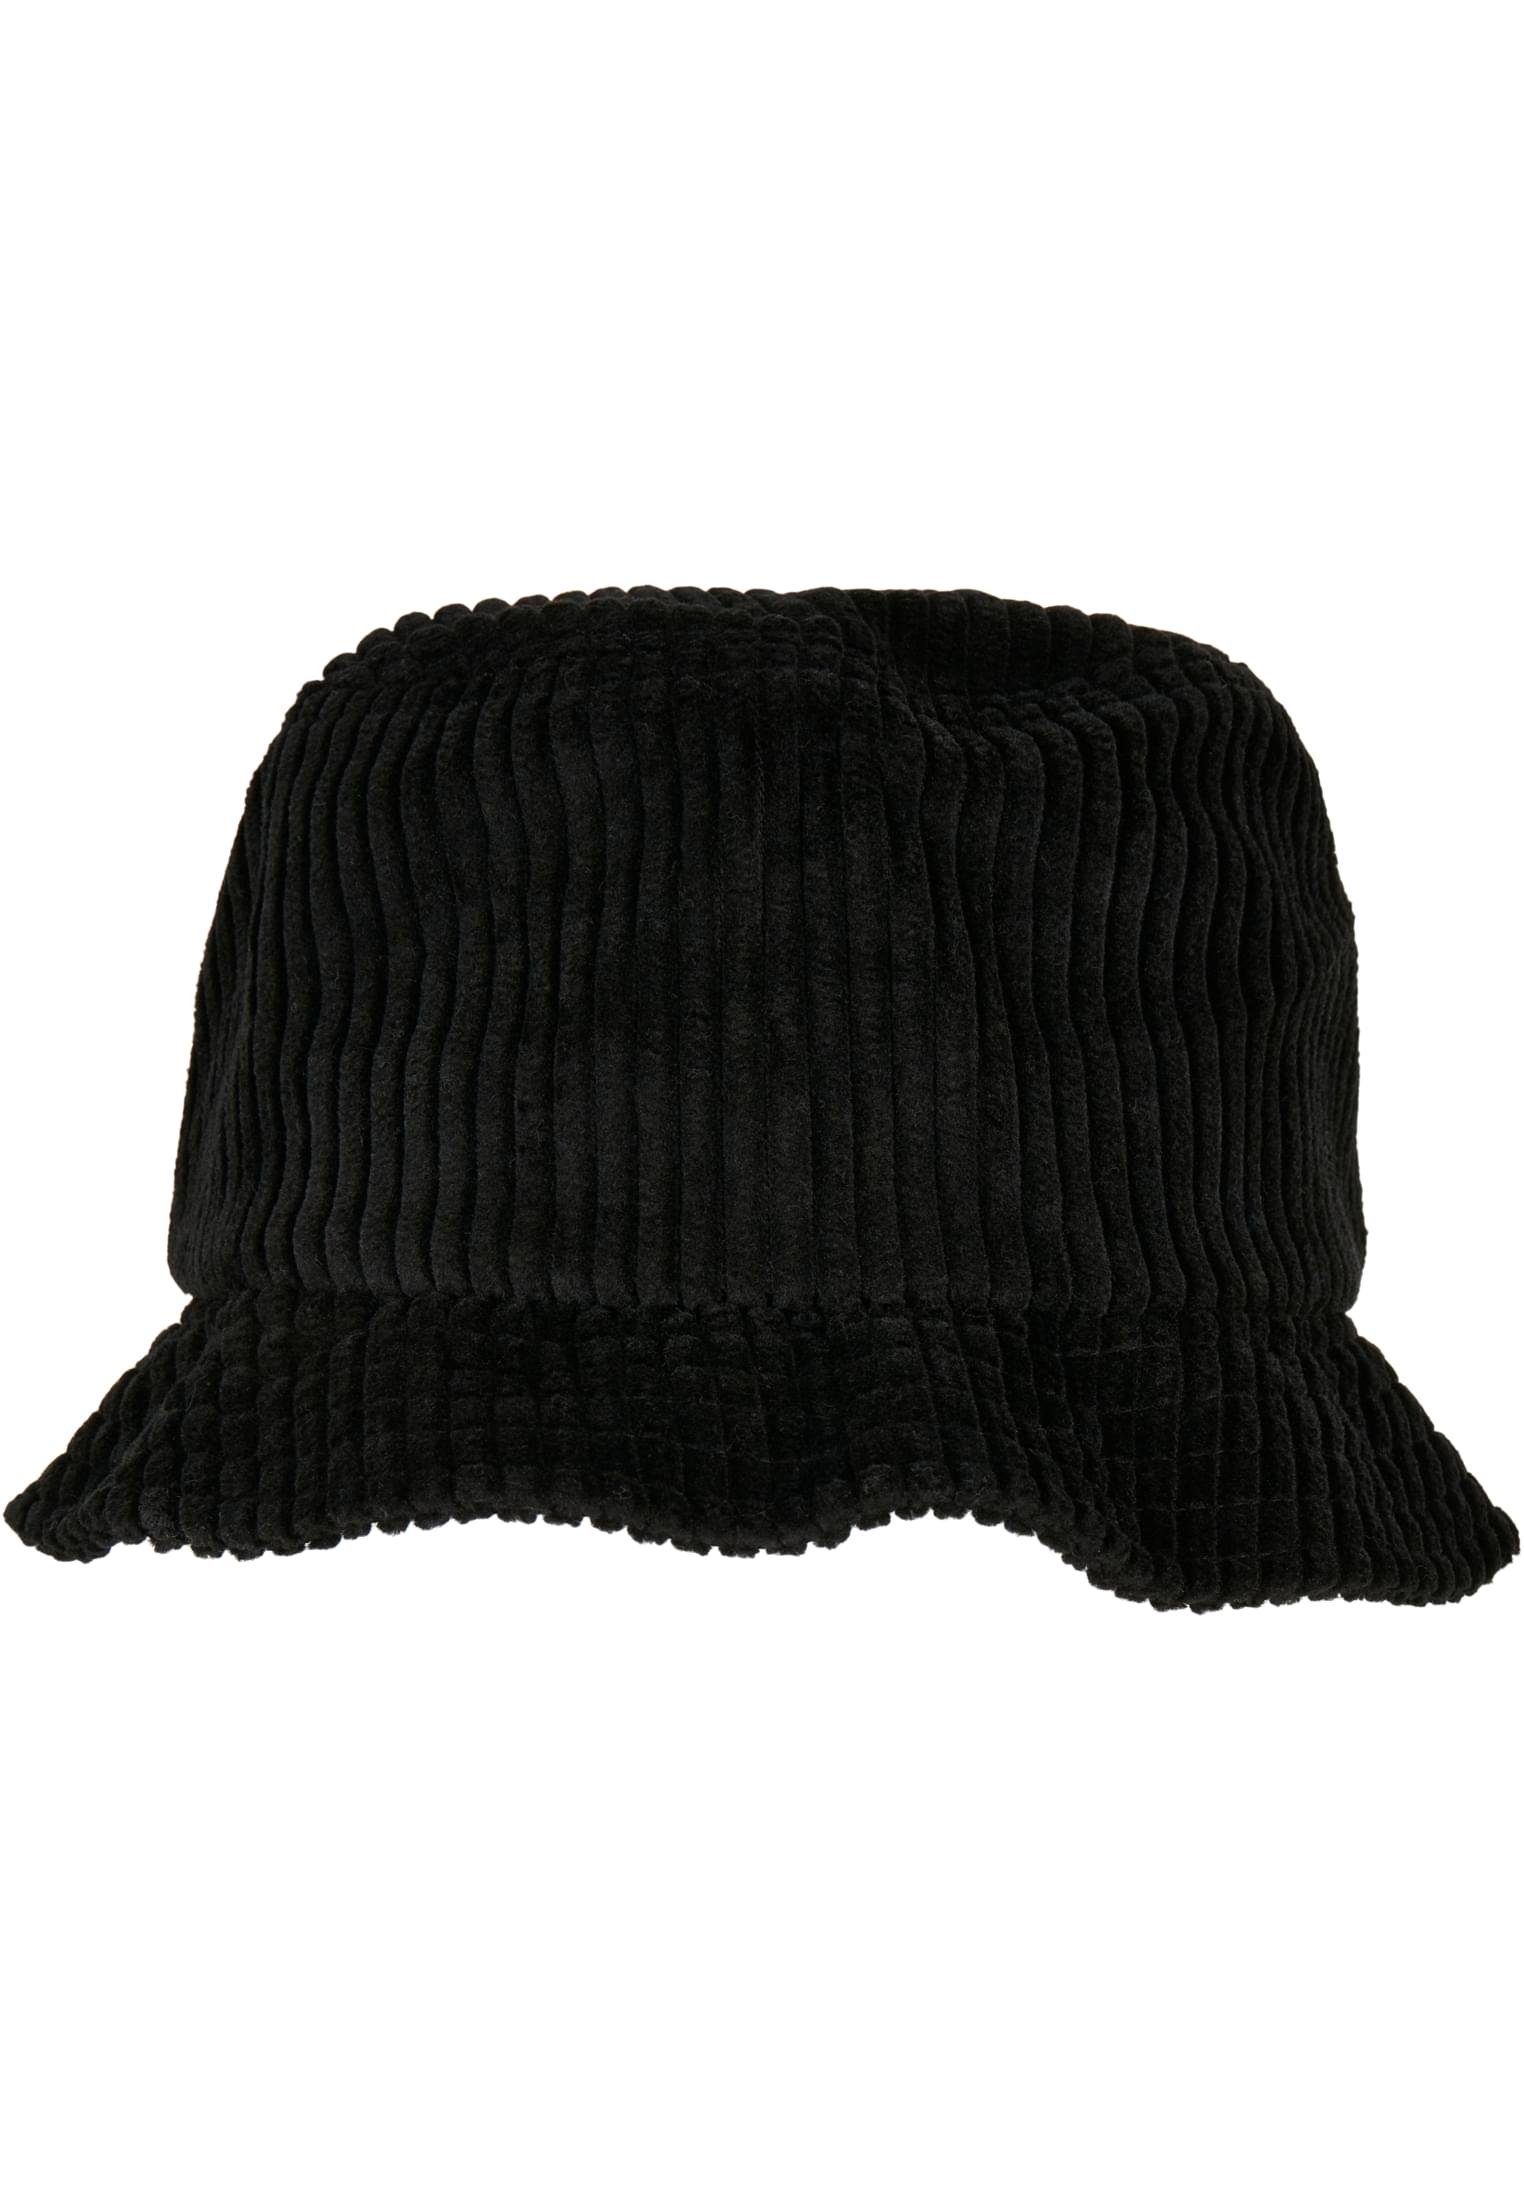 Hat black Corduroy Flex Accessoires Cap Bucket Flexfit Big